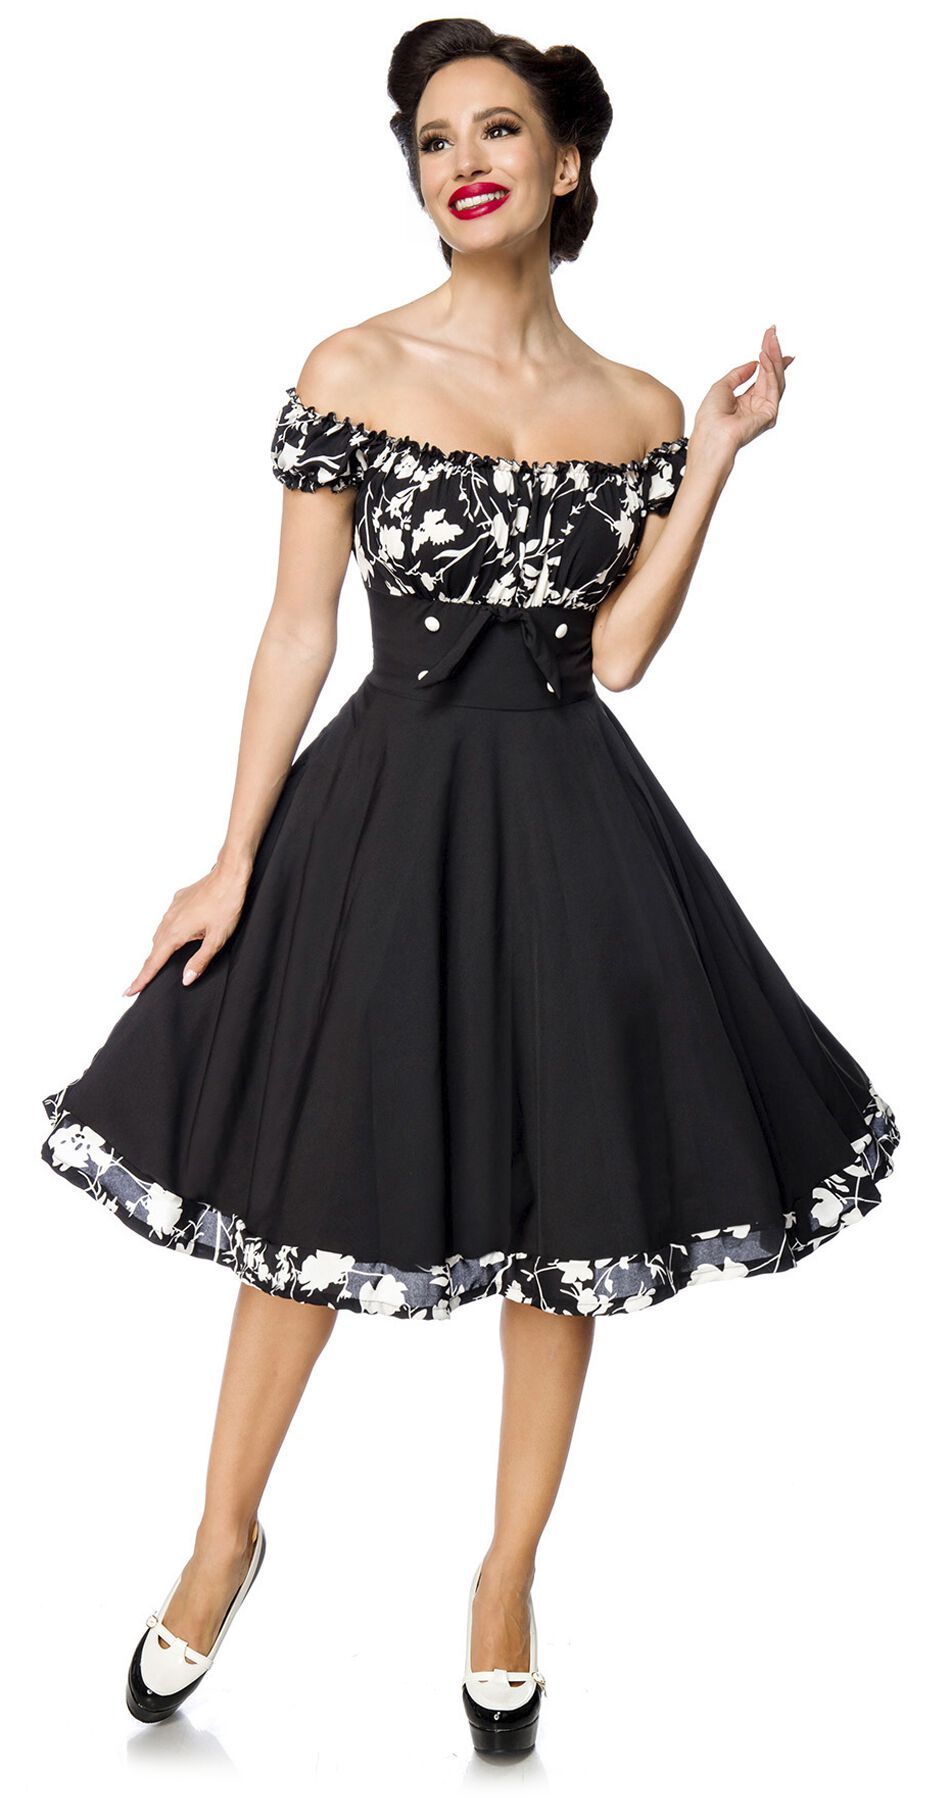 Belsira Schulterfreies Swing-Kleid Mittellanges Kleid schwarz weiß in S